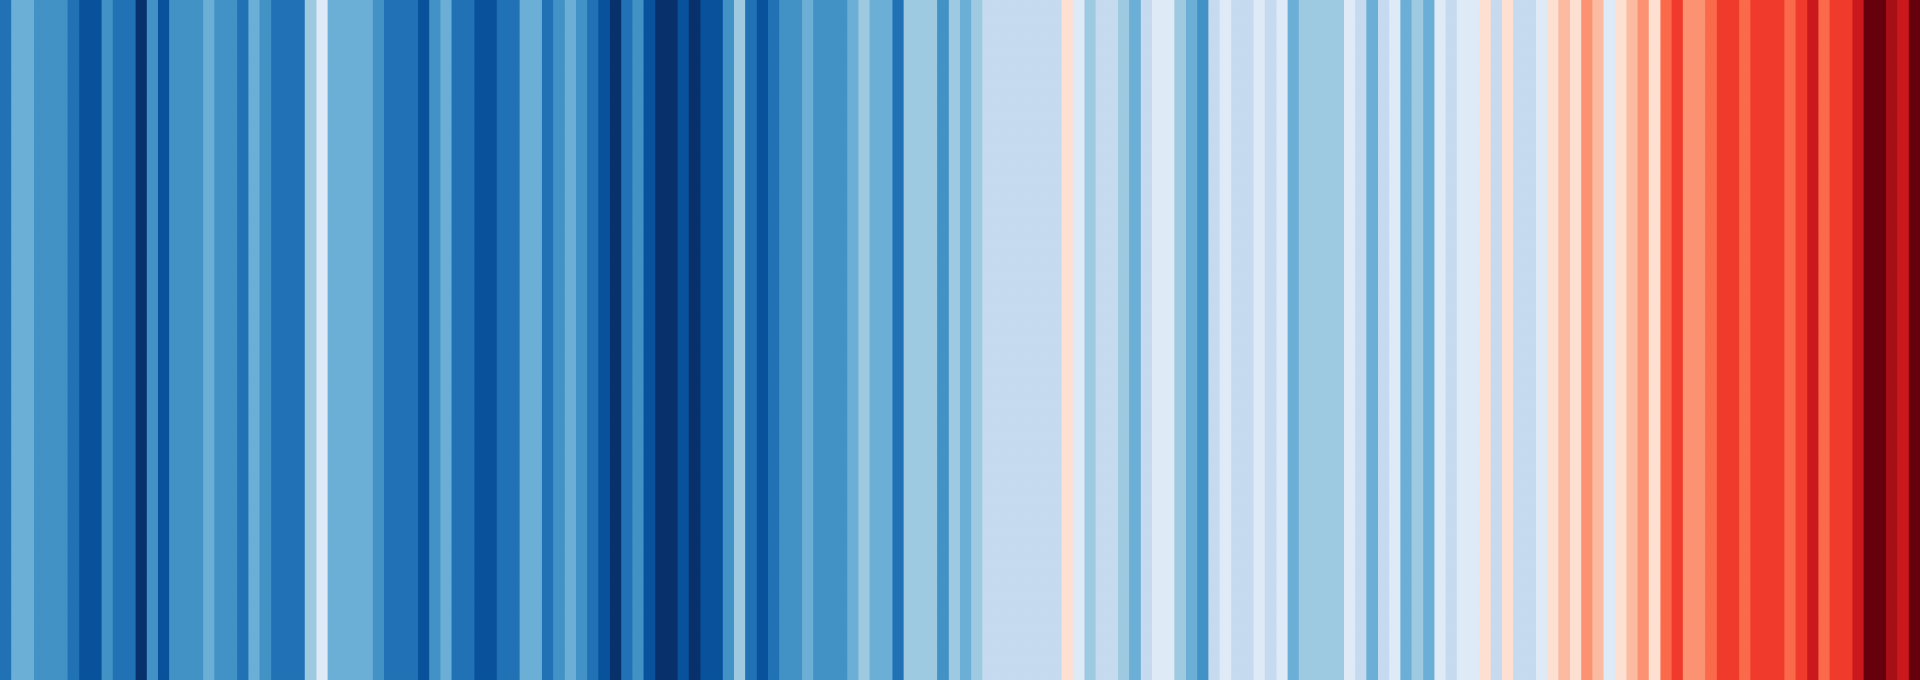 Klimastreifen: blaue und rote vertikale Streifen zeigen die Veränderung der globalen Mitteltemperatur. Blau steht für kühle Durchschnittstemperaturen und rot für wärmere. Je nach Temperatur gibt es Abstfungen in blau und rot